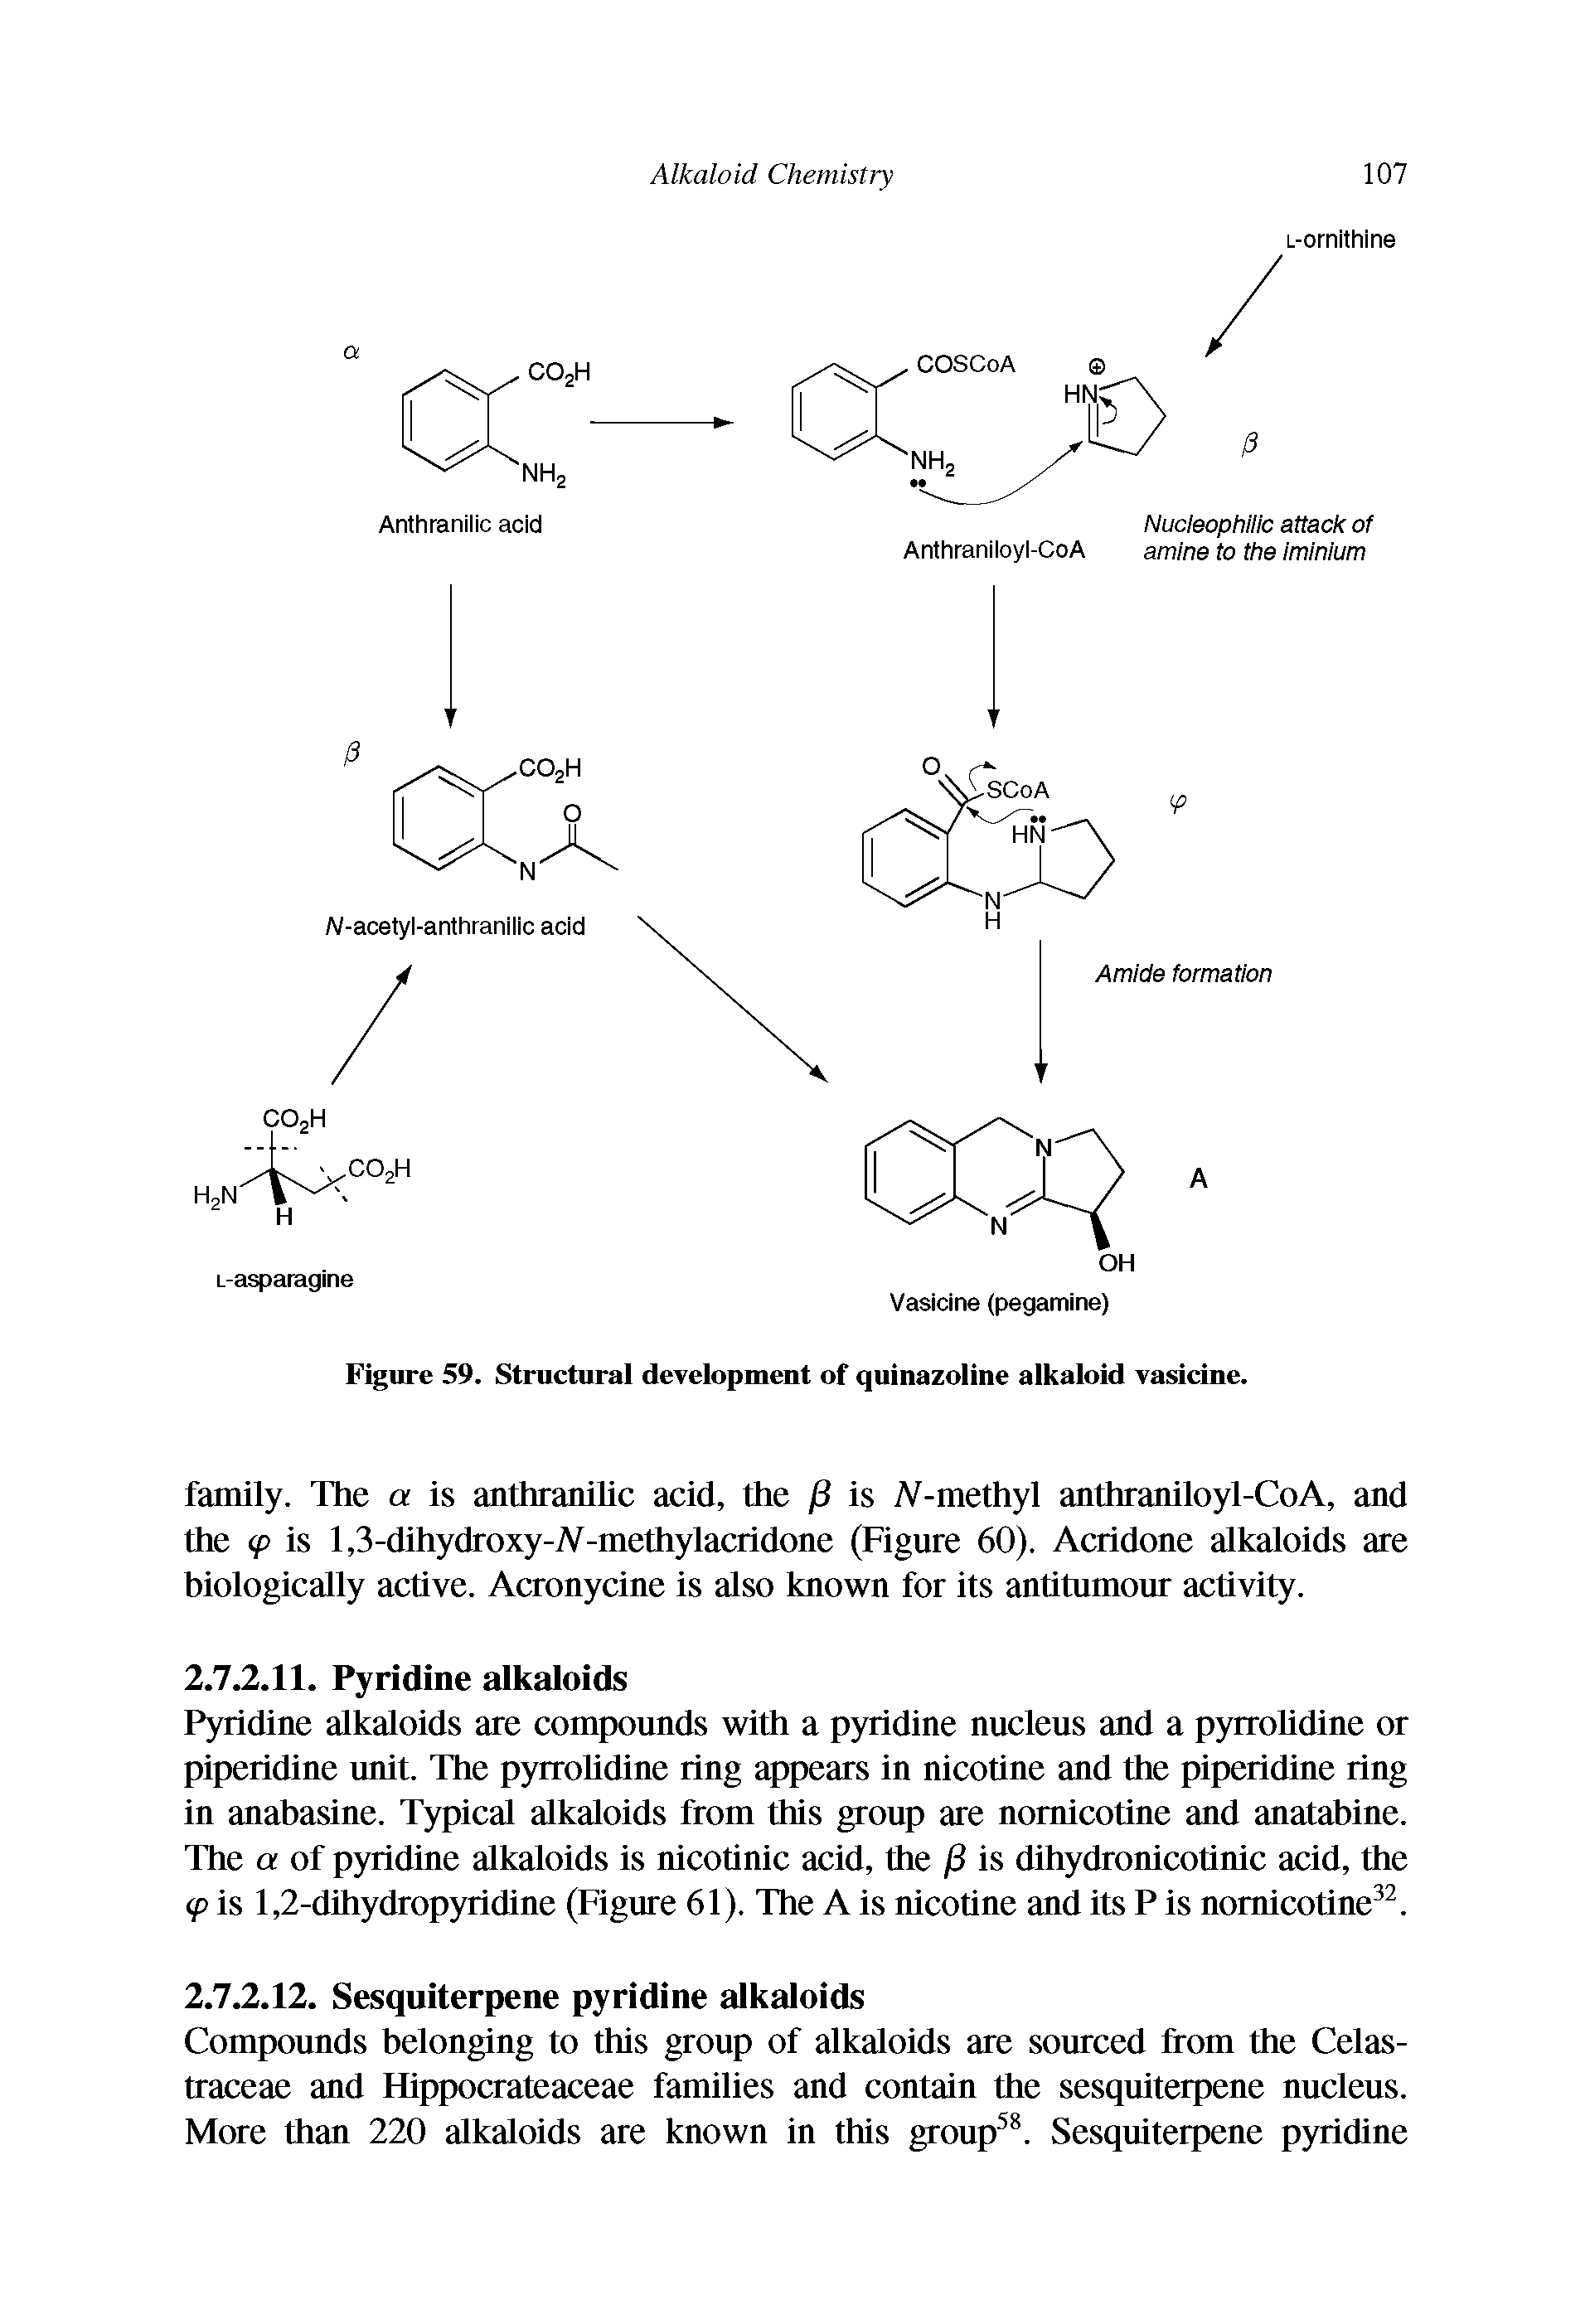 Figure 59. Structural development of quinazoline alkaloid vasicine.